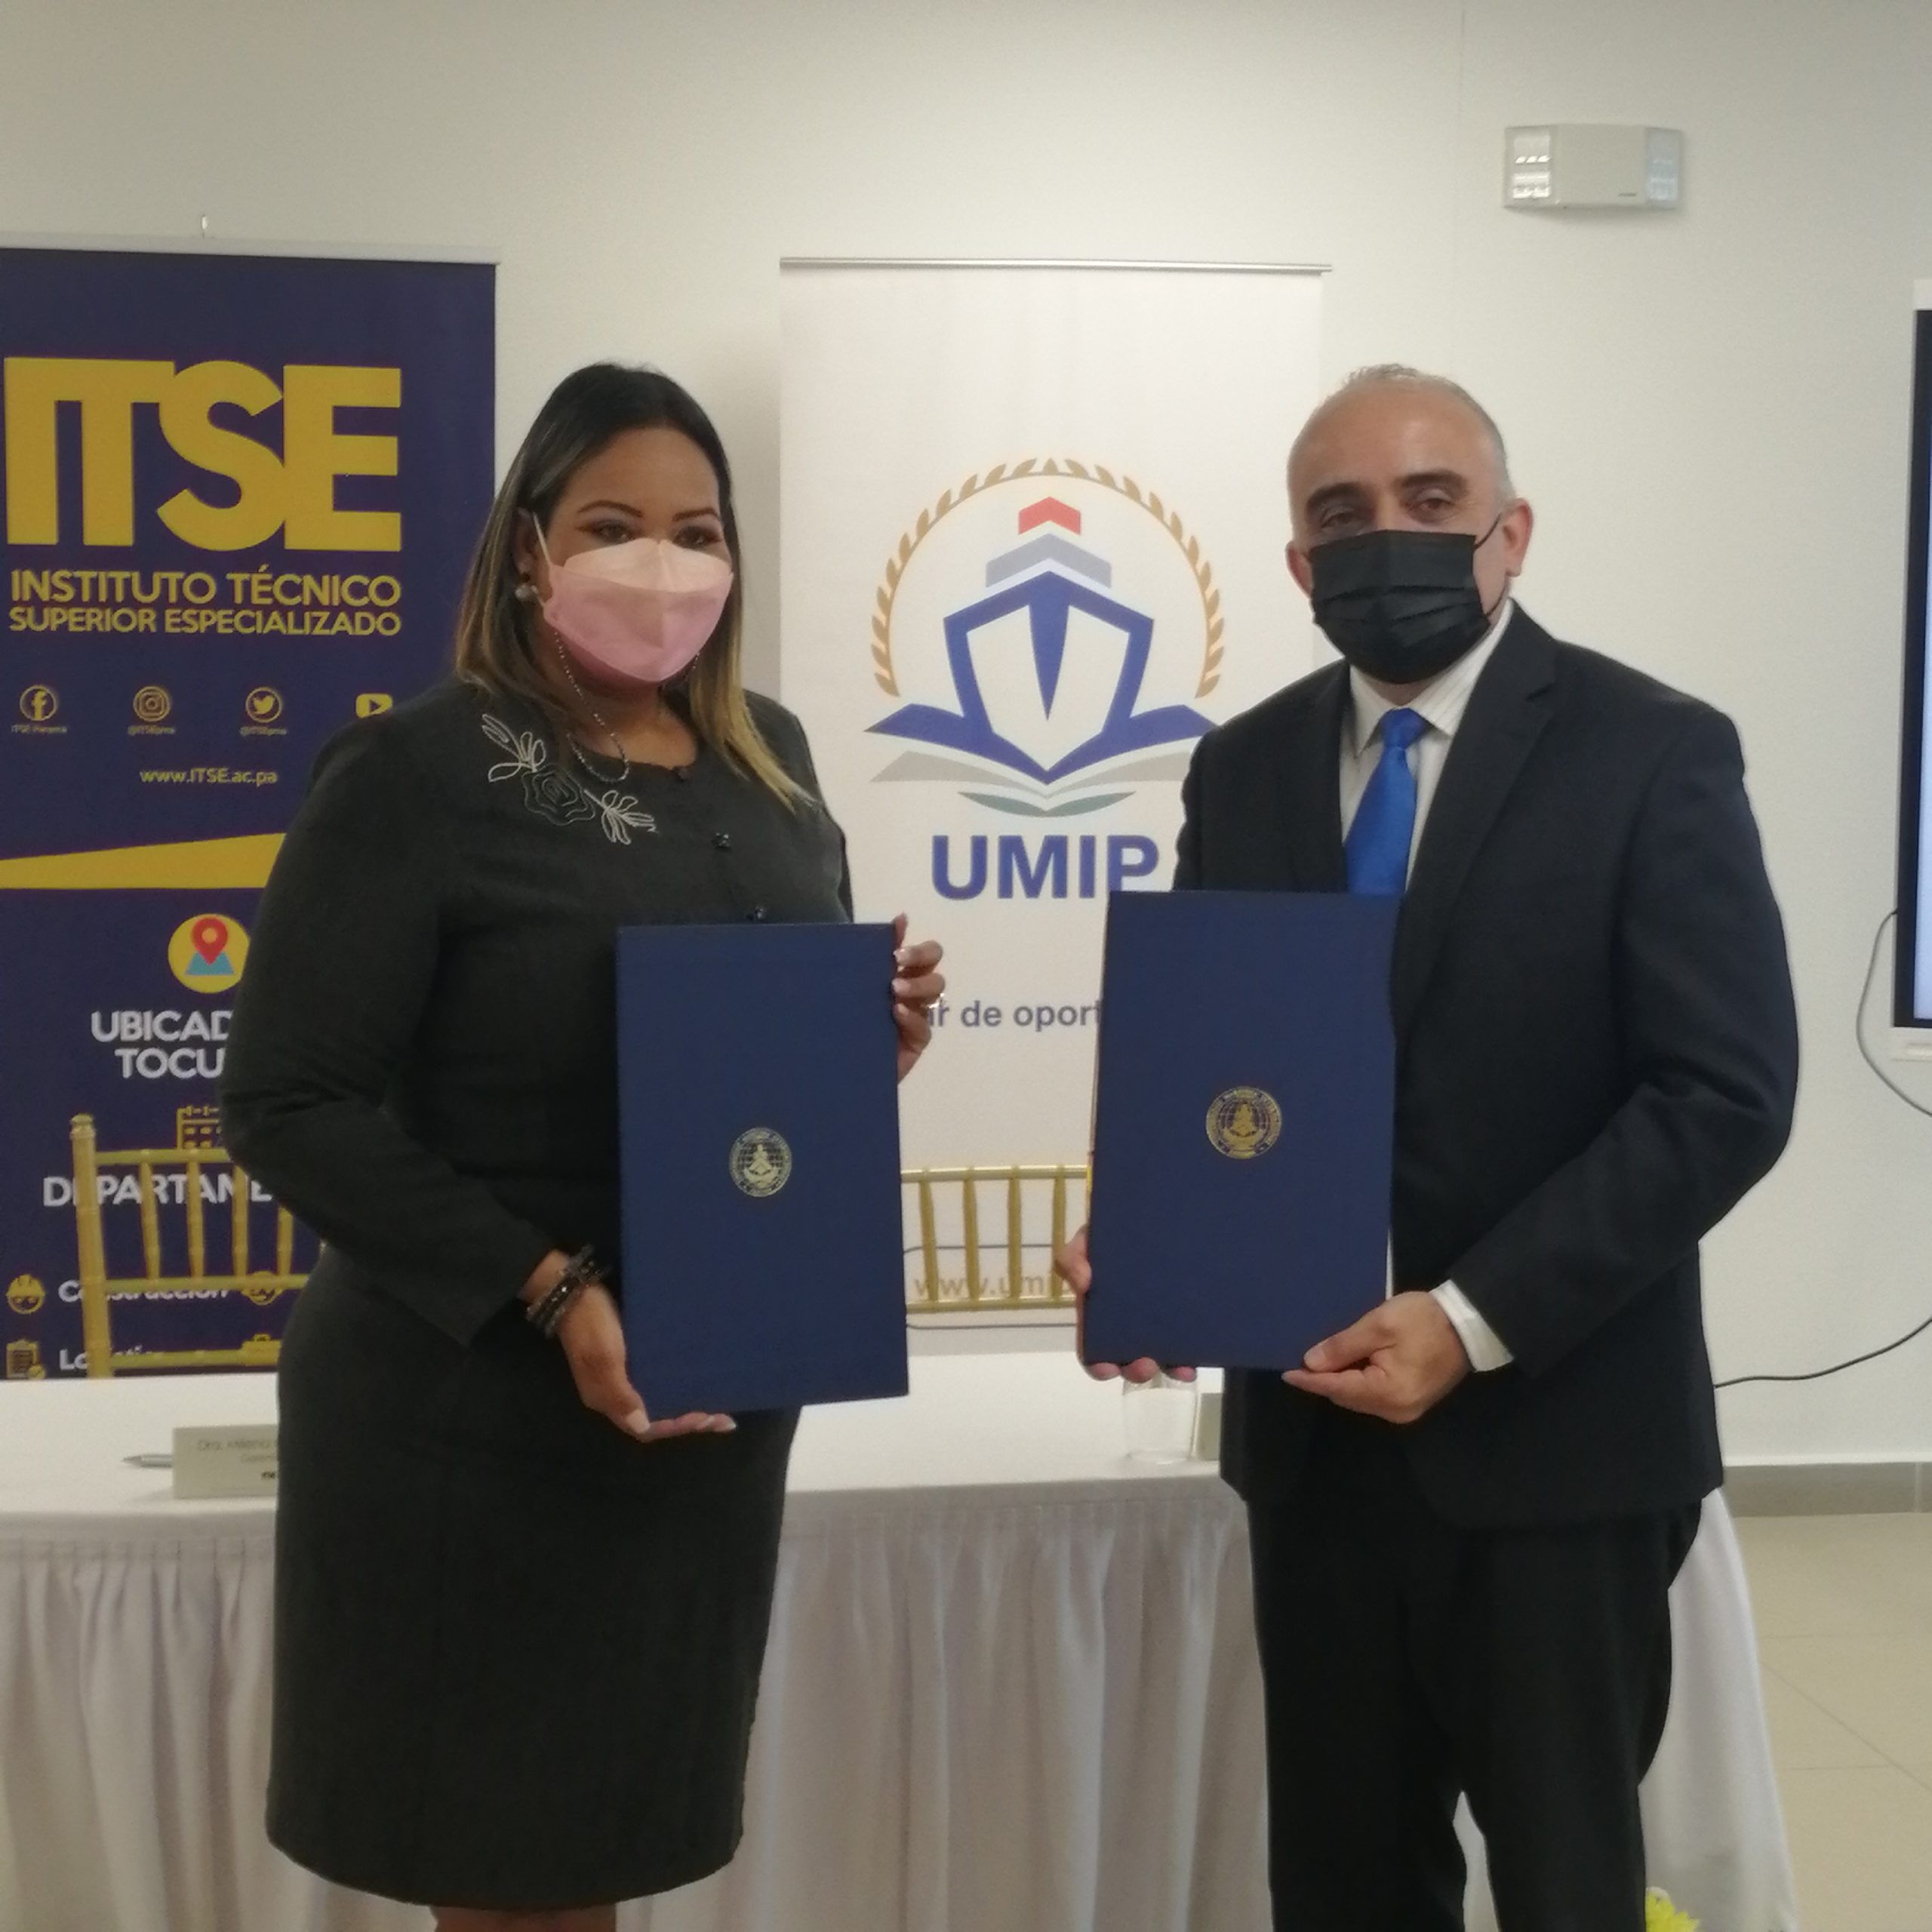 UMIP e ITSE firman convenio para propiciar colaboración en proyectos de capacitación superior